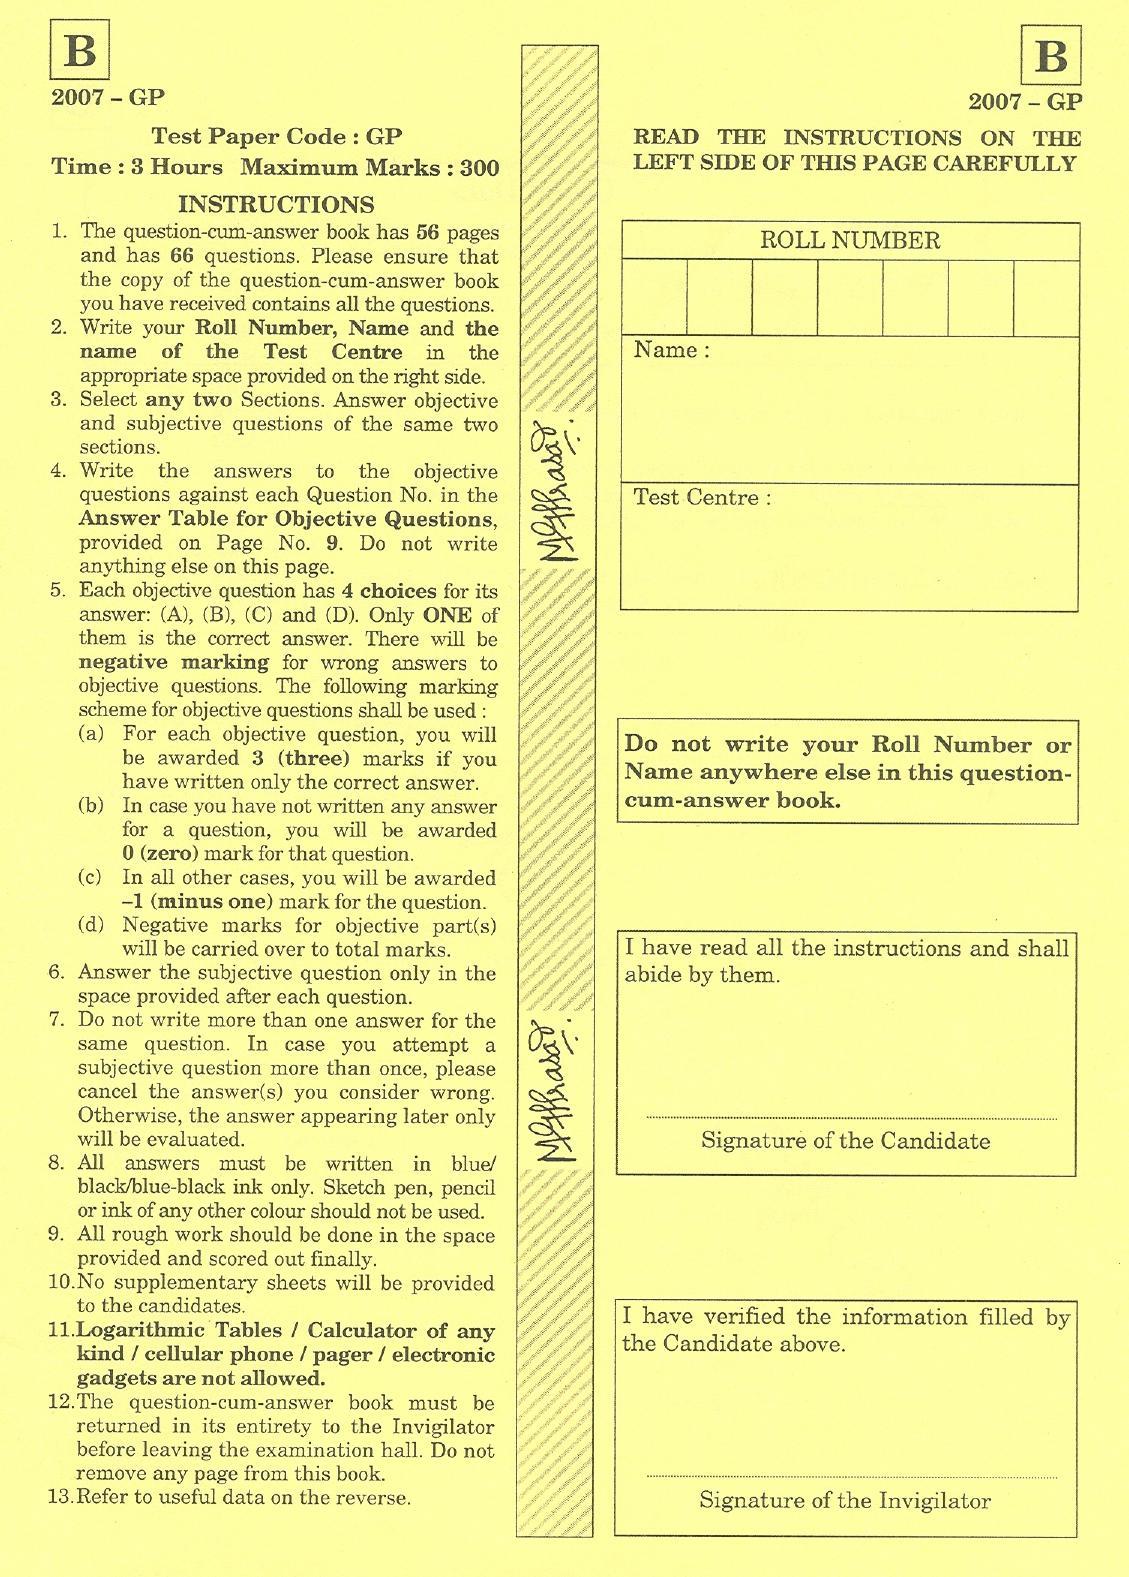 JAM 2007: GP Question Paper - Page 1